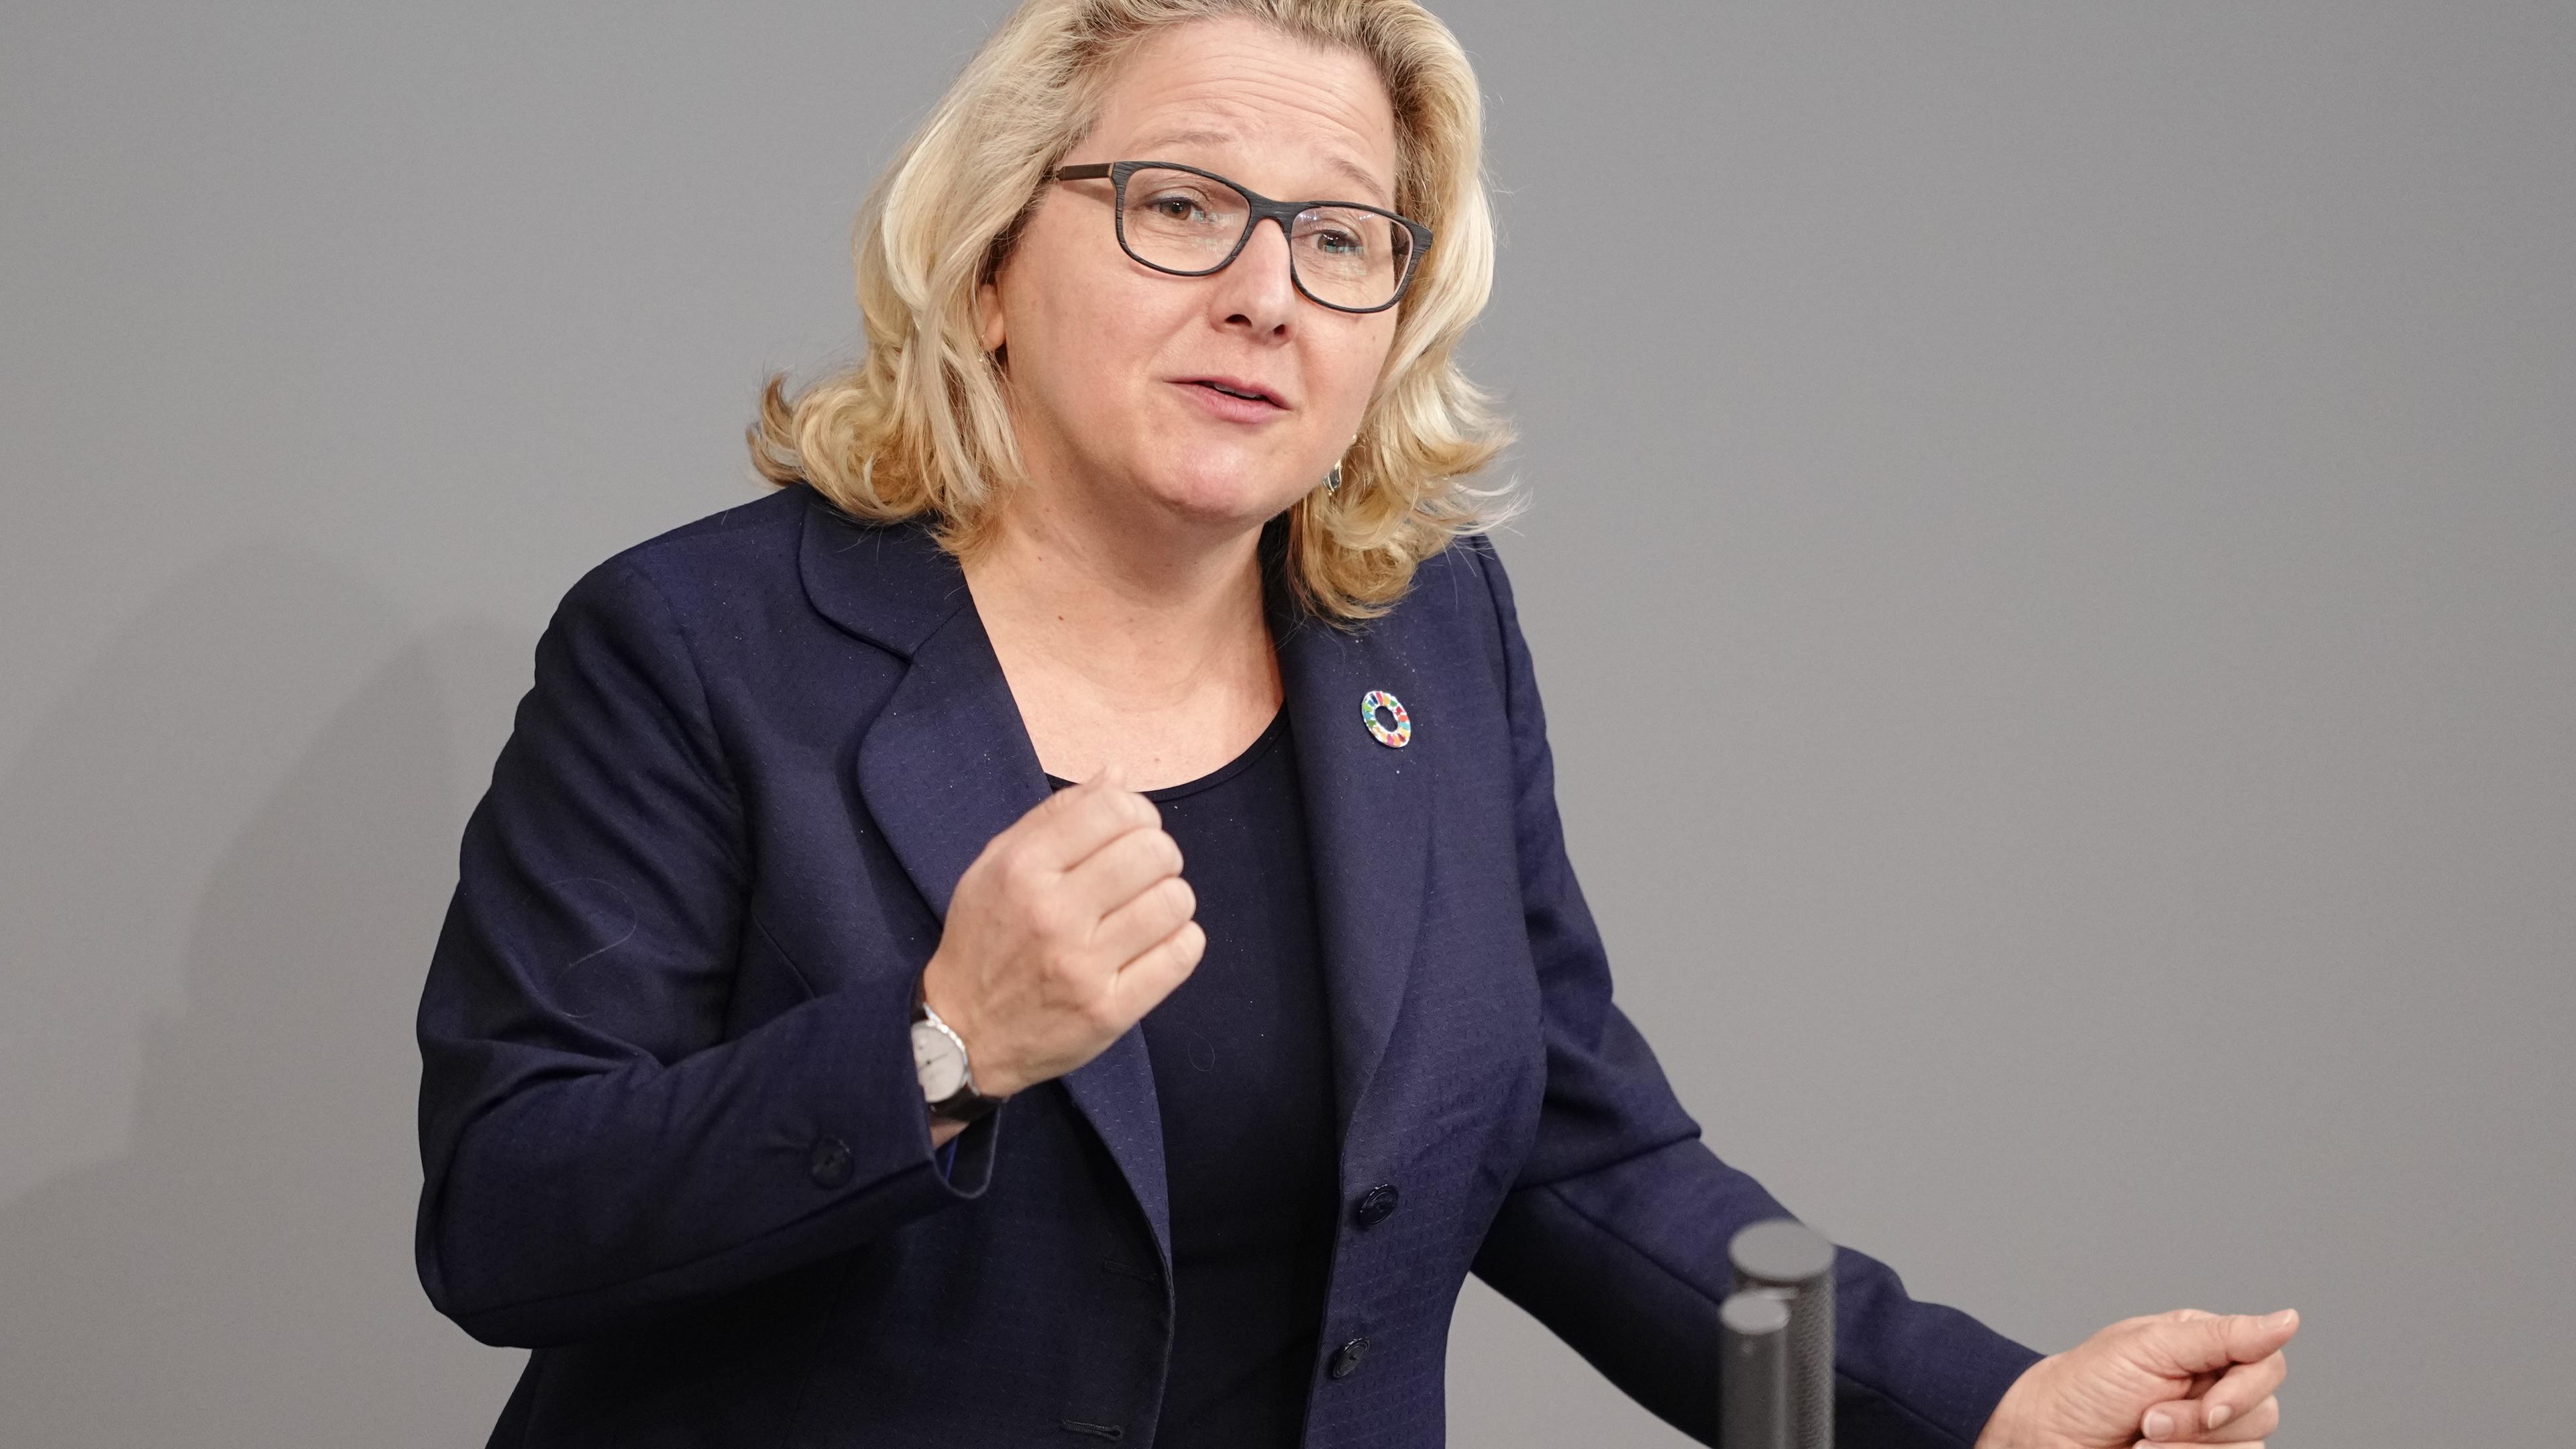 Svenja Schulze (SPD), Bundesministerin für wirtschaftliche Zusammenarbeit und Entwicklung, spricht bei der Sitzung des Bundestags zu den Abgeordneten.